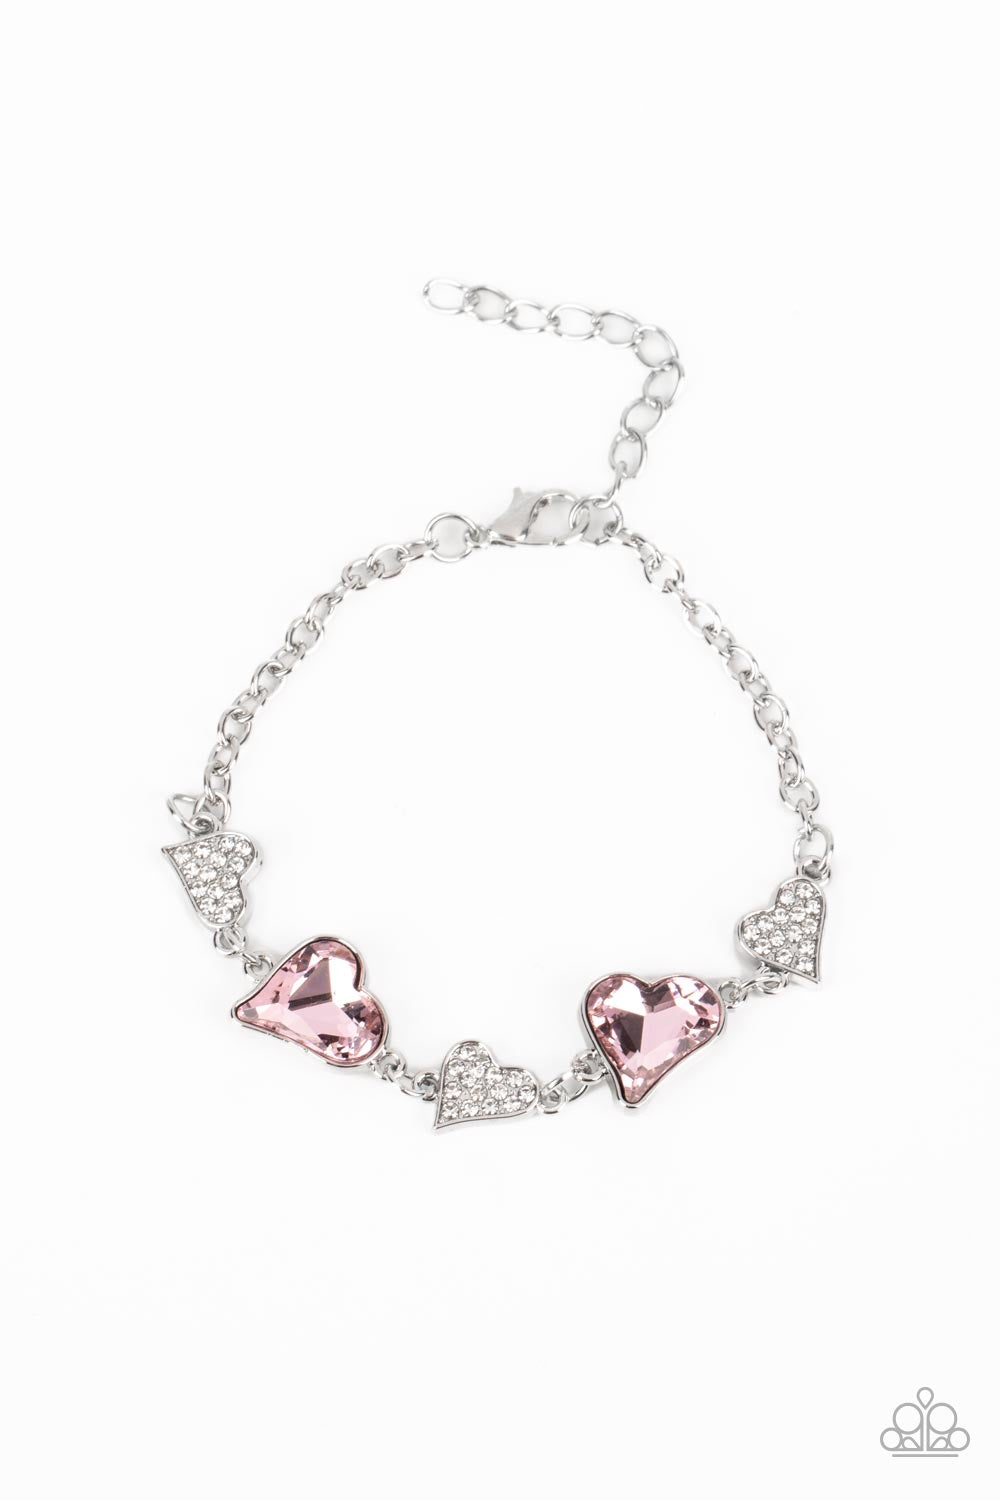 Cute Bracelets - Paparazzi Cluelessly Crushing - Pink Bracelet - Paparazzi jewelry images 